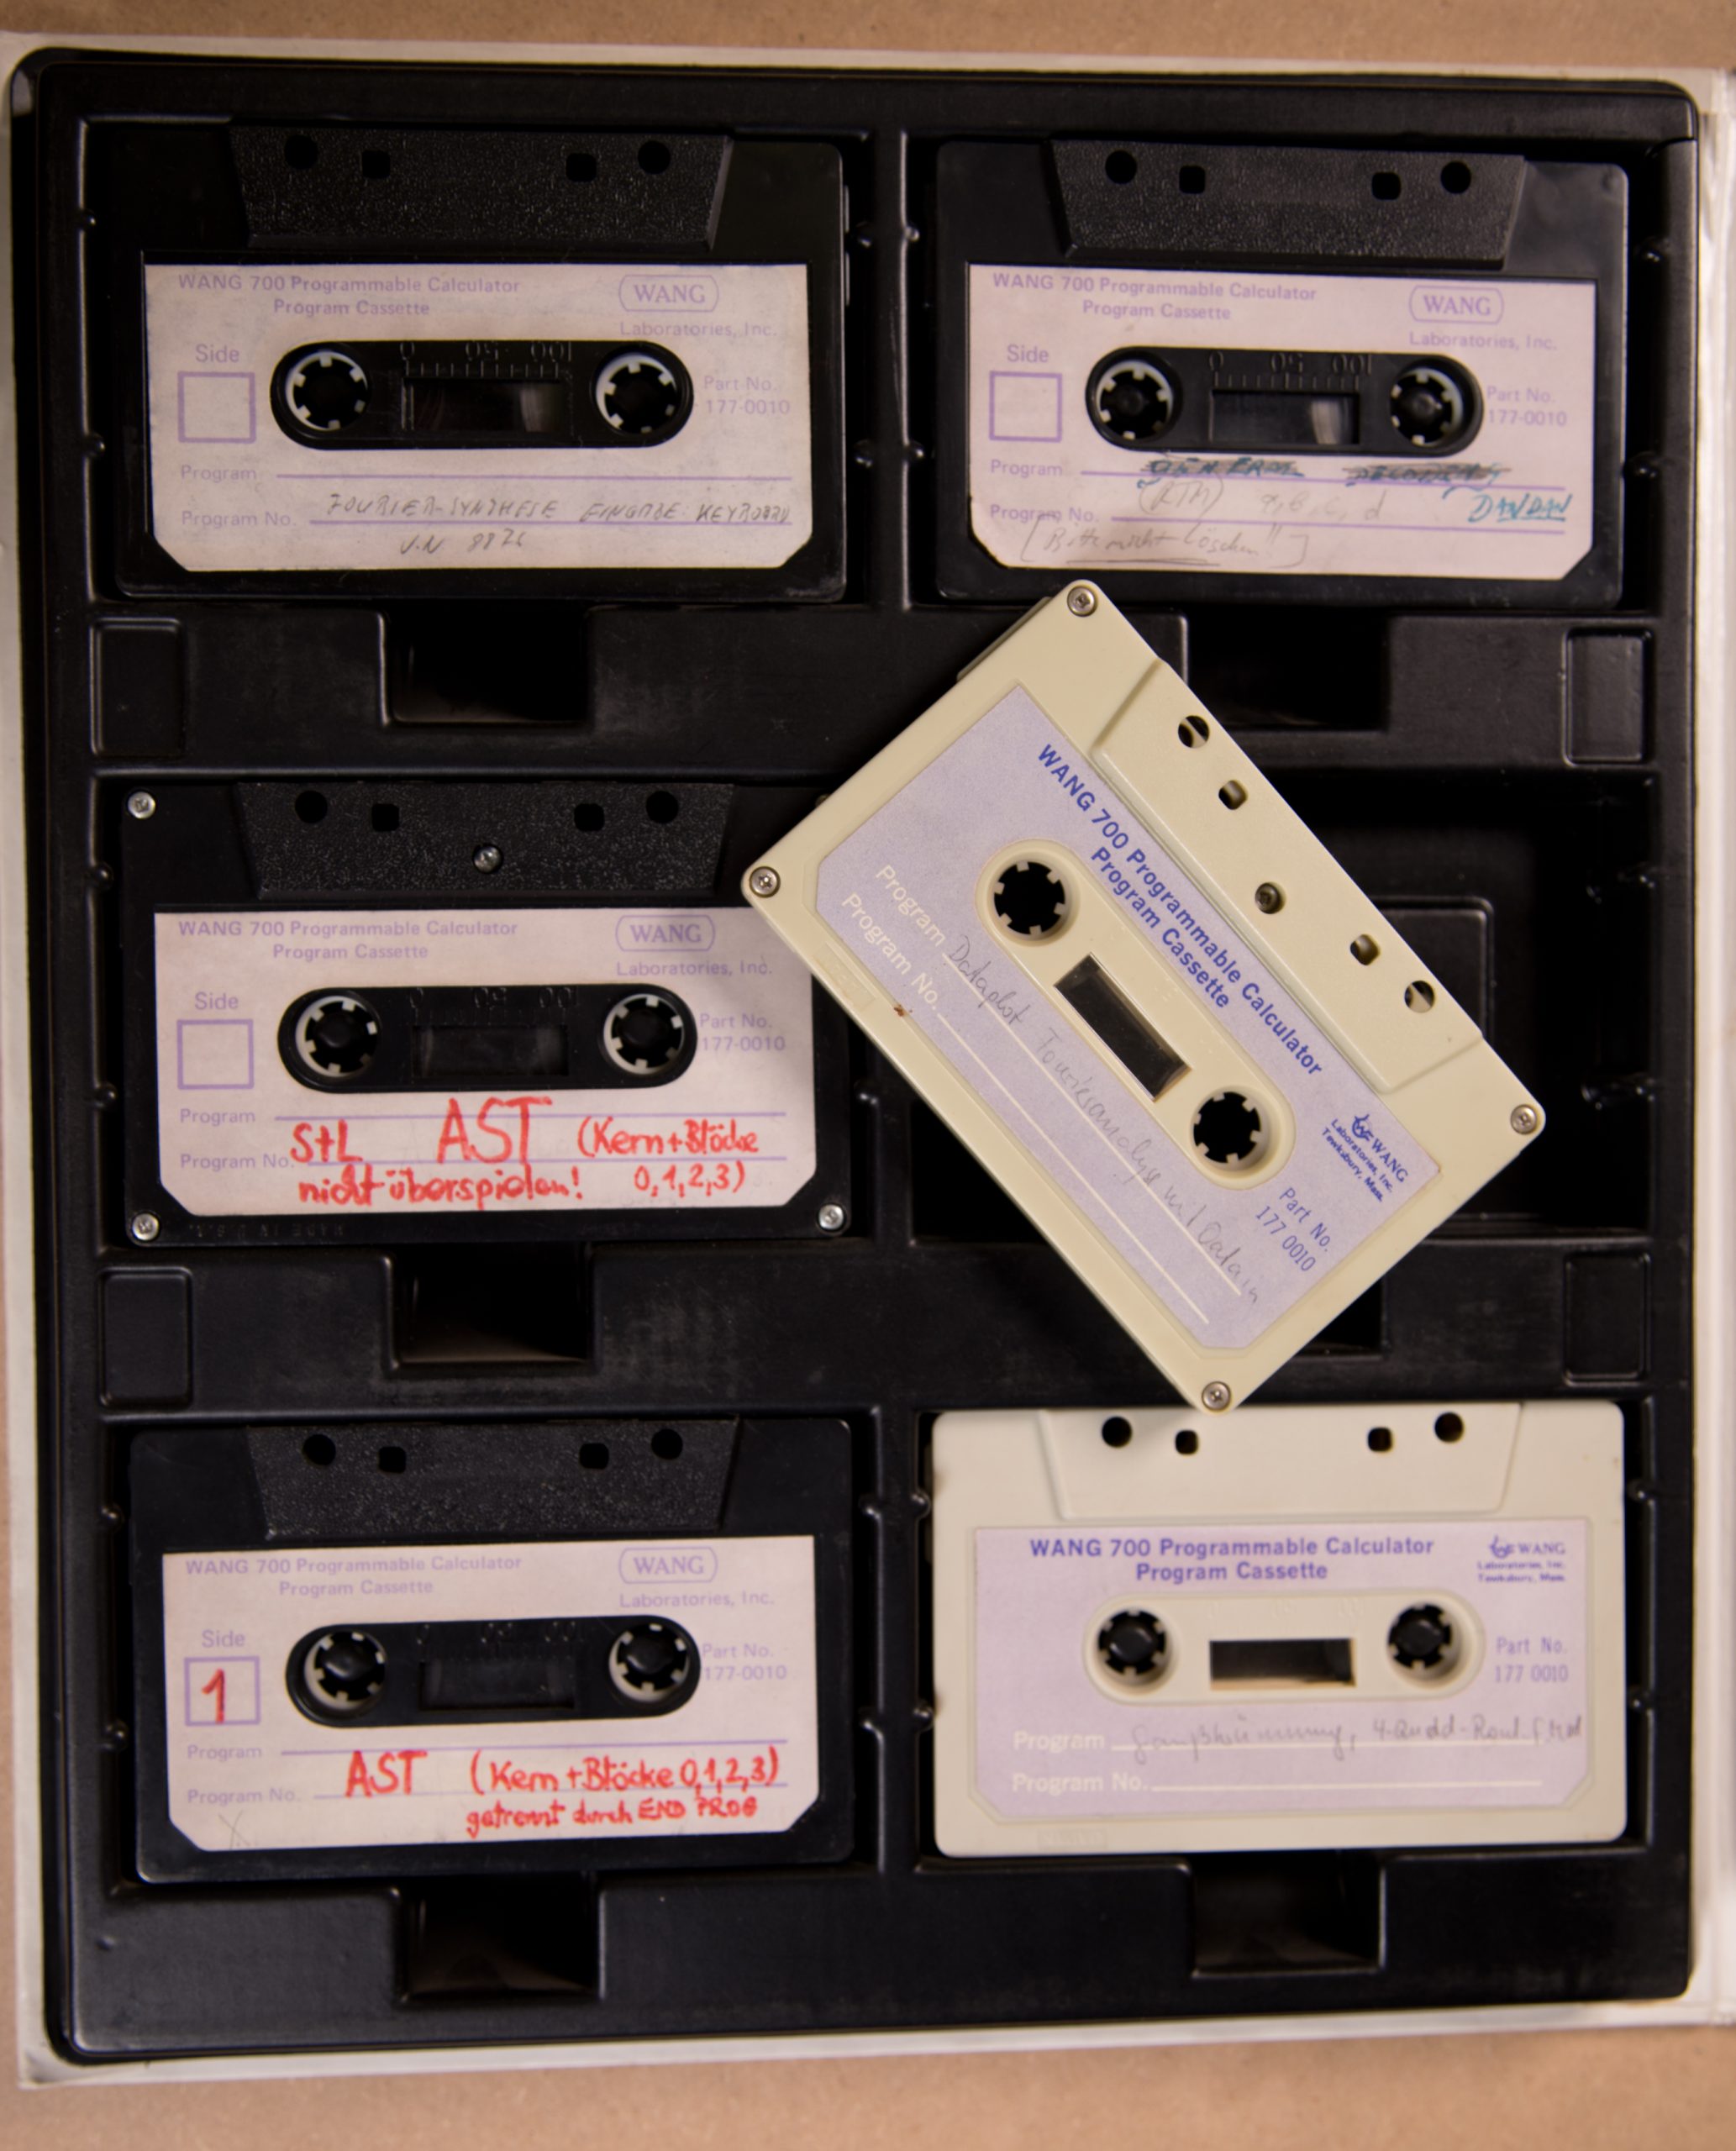 Program cassettes